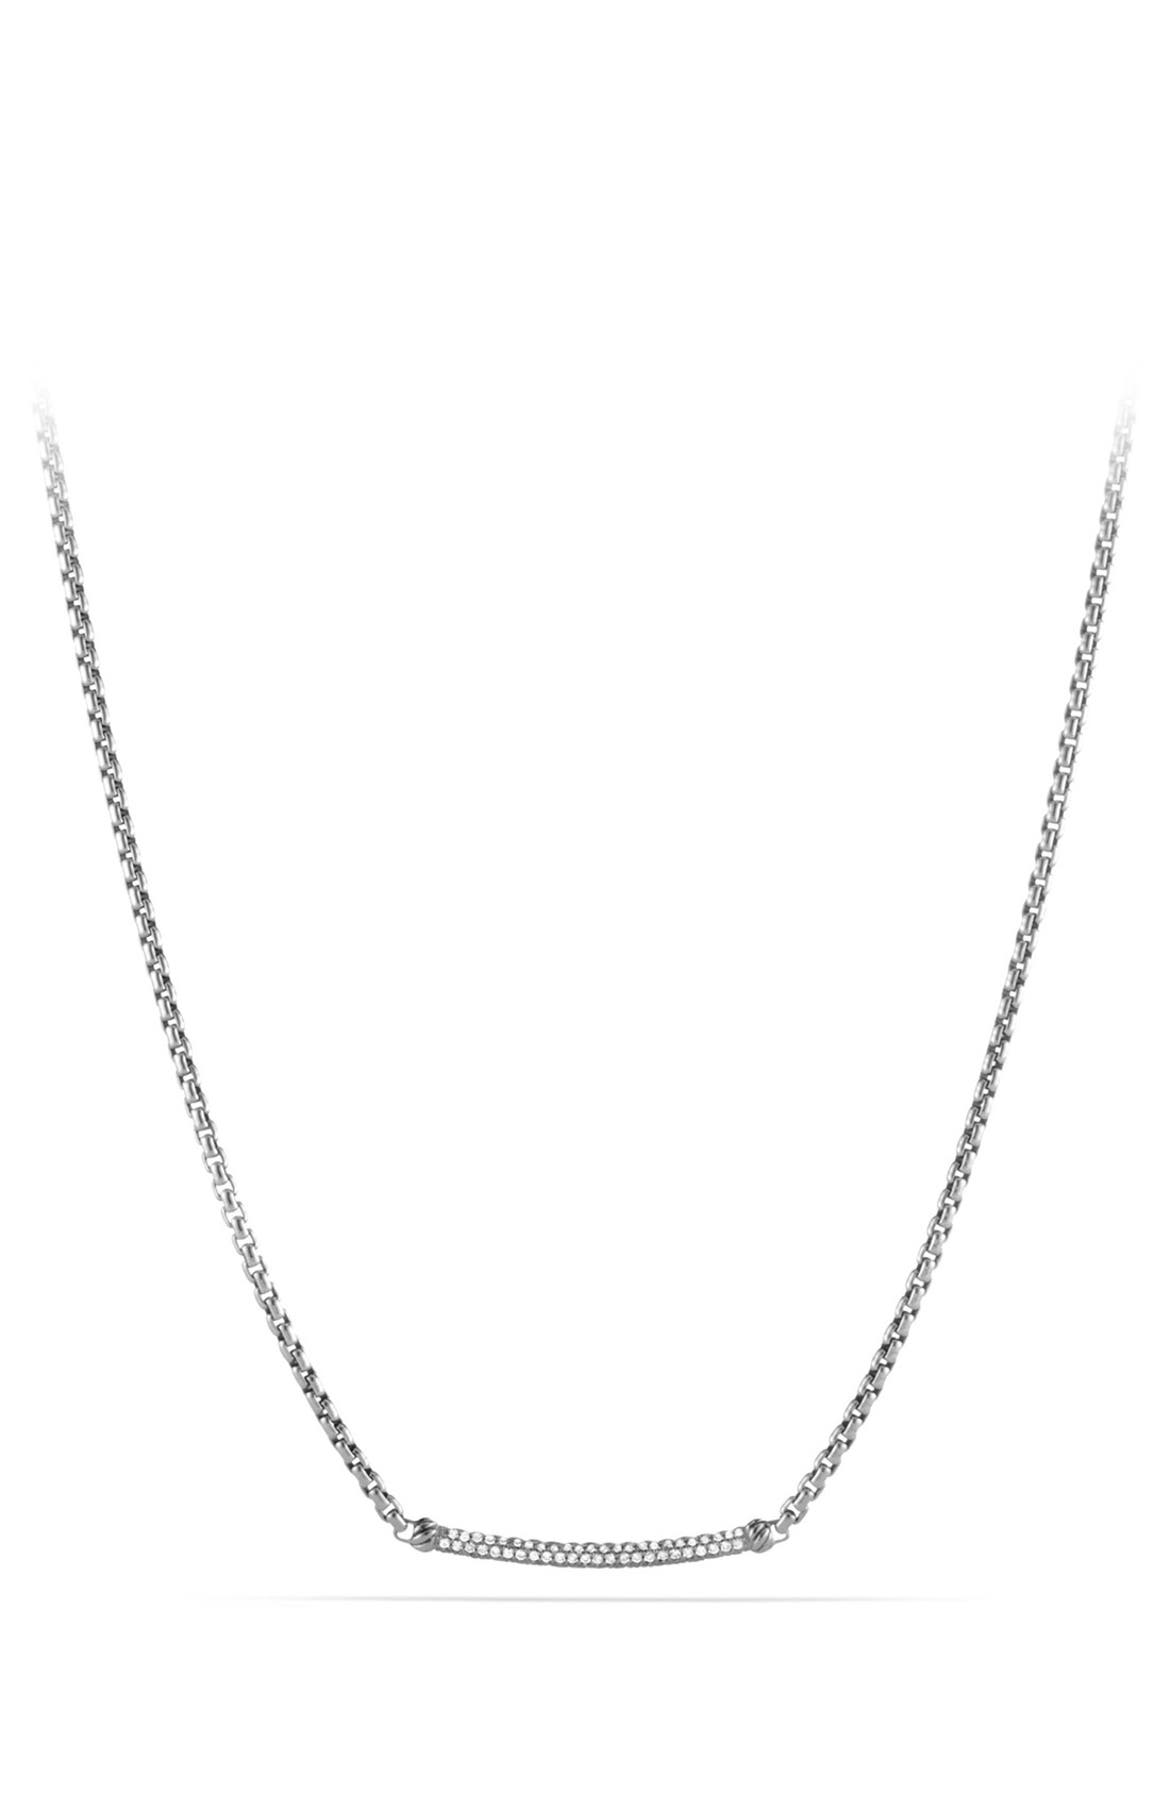 David Yurman 'Petite Pavé' Metro Chain Necklace with Diamonds | Nordstrom